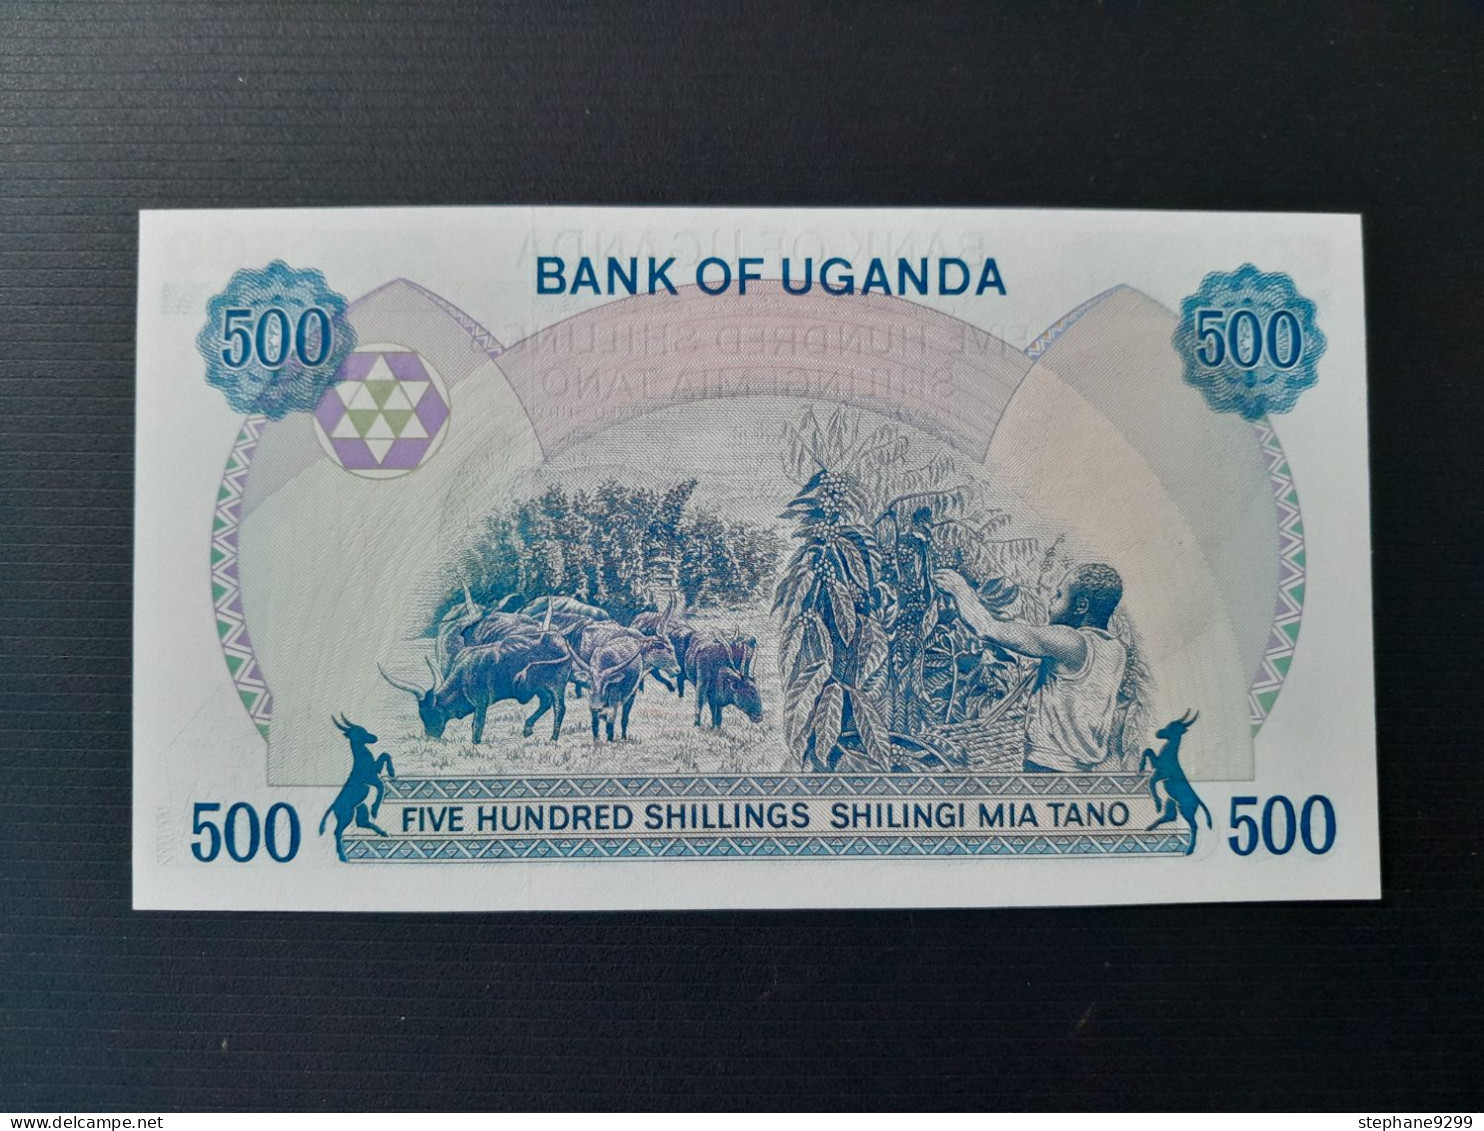 UGANDA 500 SHILLINGS 1983.NEUF - Uganda